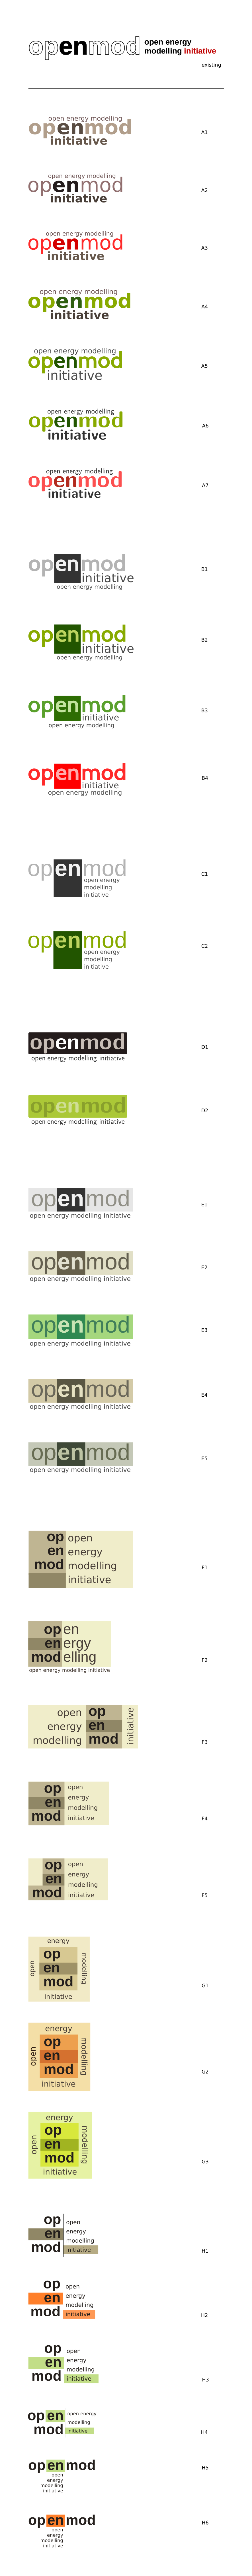 Openmod logo / loop one